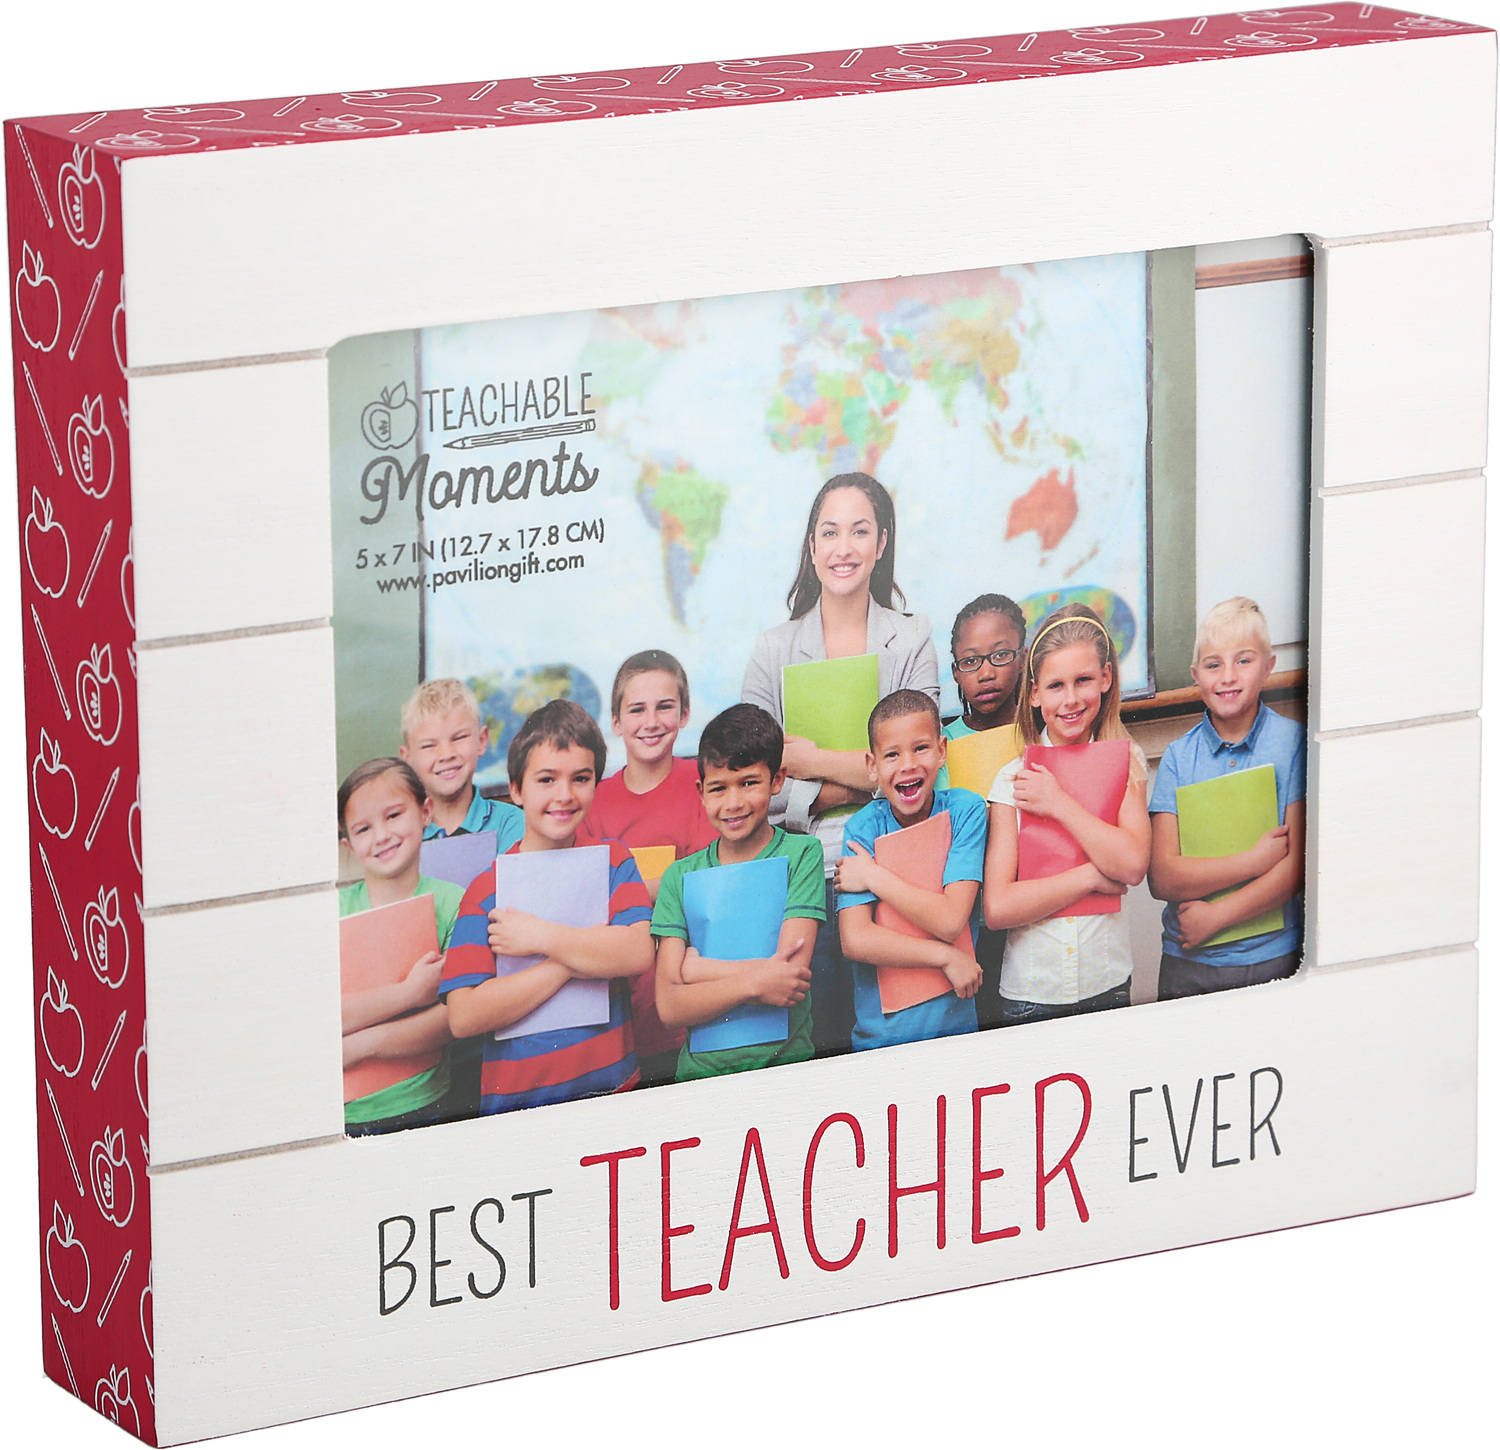 Best Teacher Ever by Teachable Moments - Best Teacher Ever - 9" x 7.25" Frame (Holds 7" x 5" Photo)